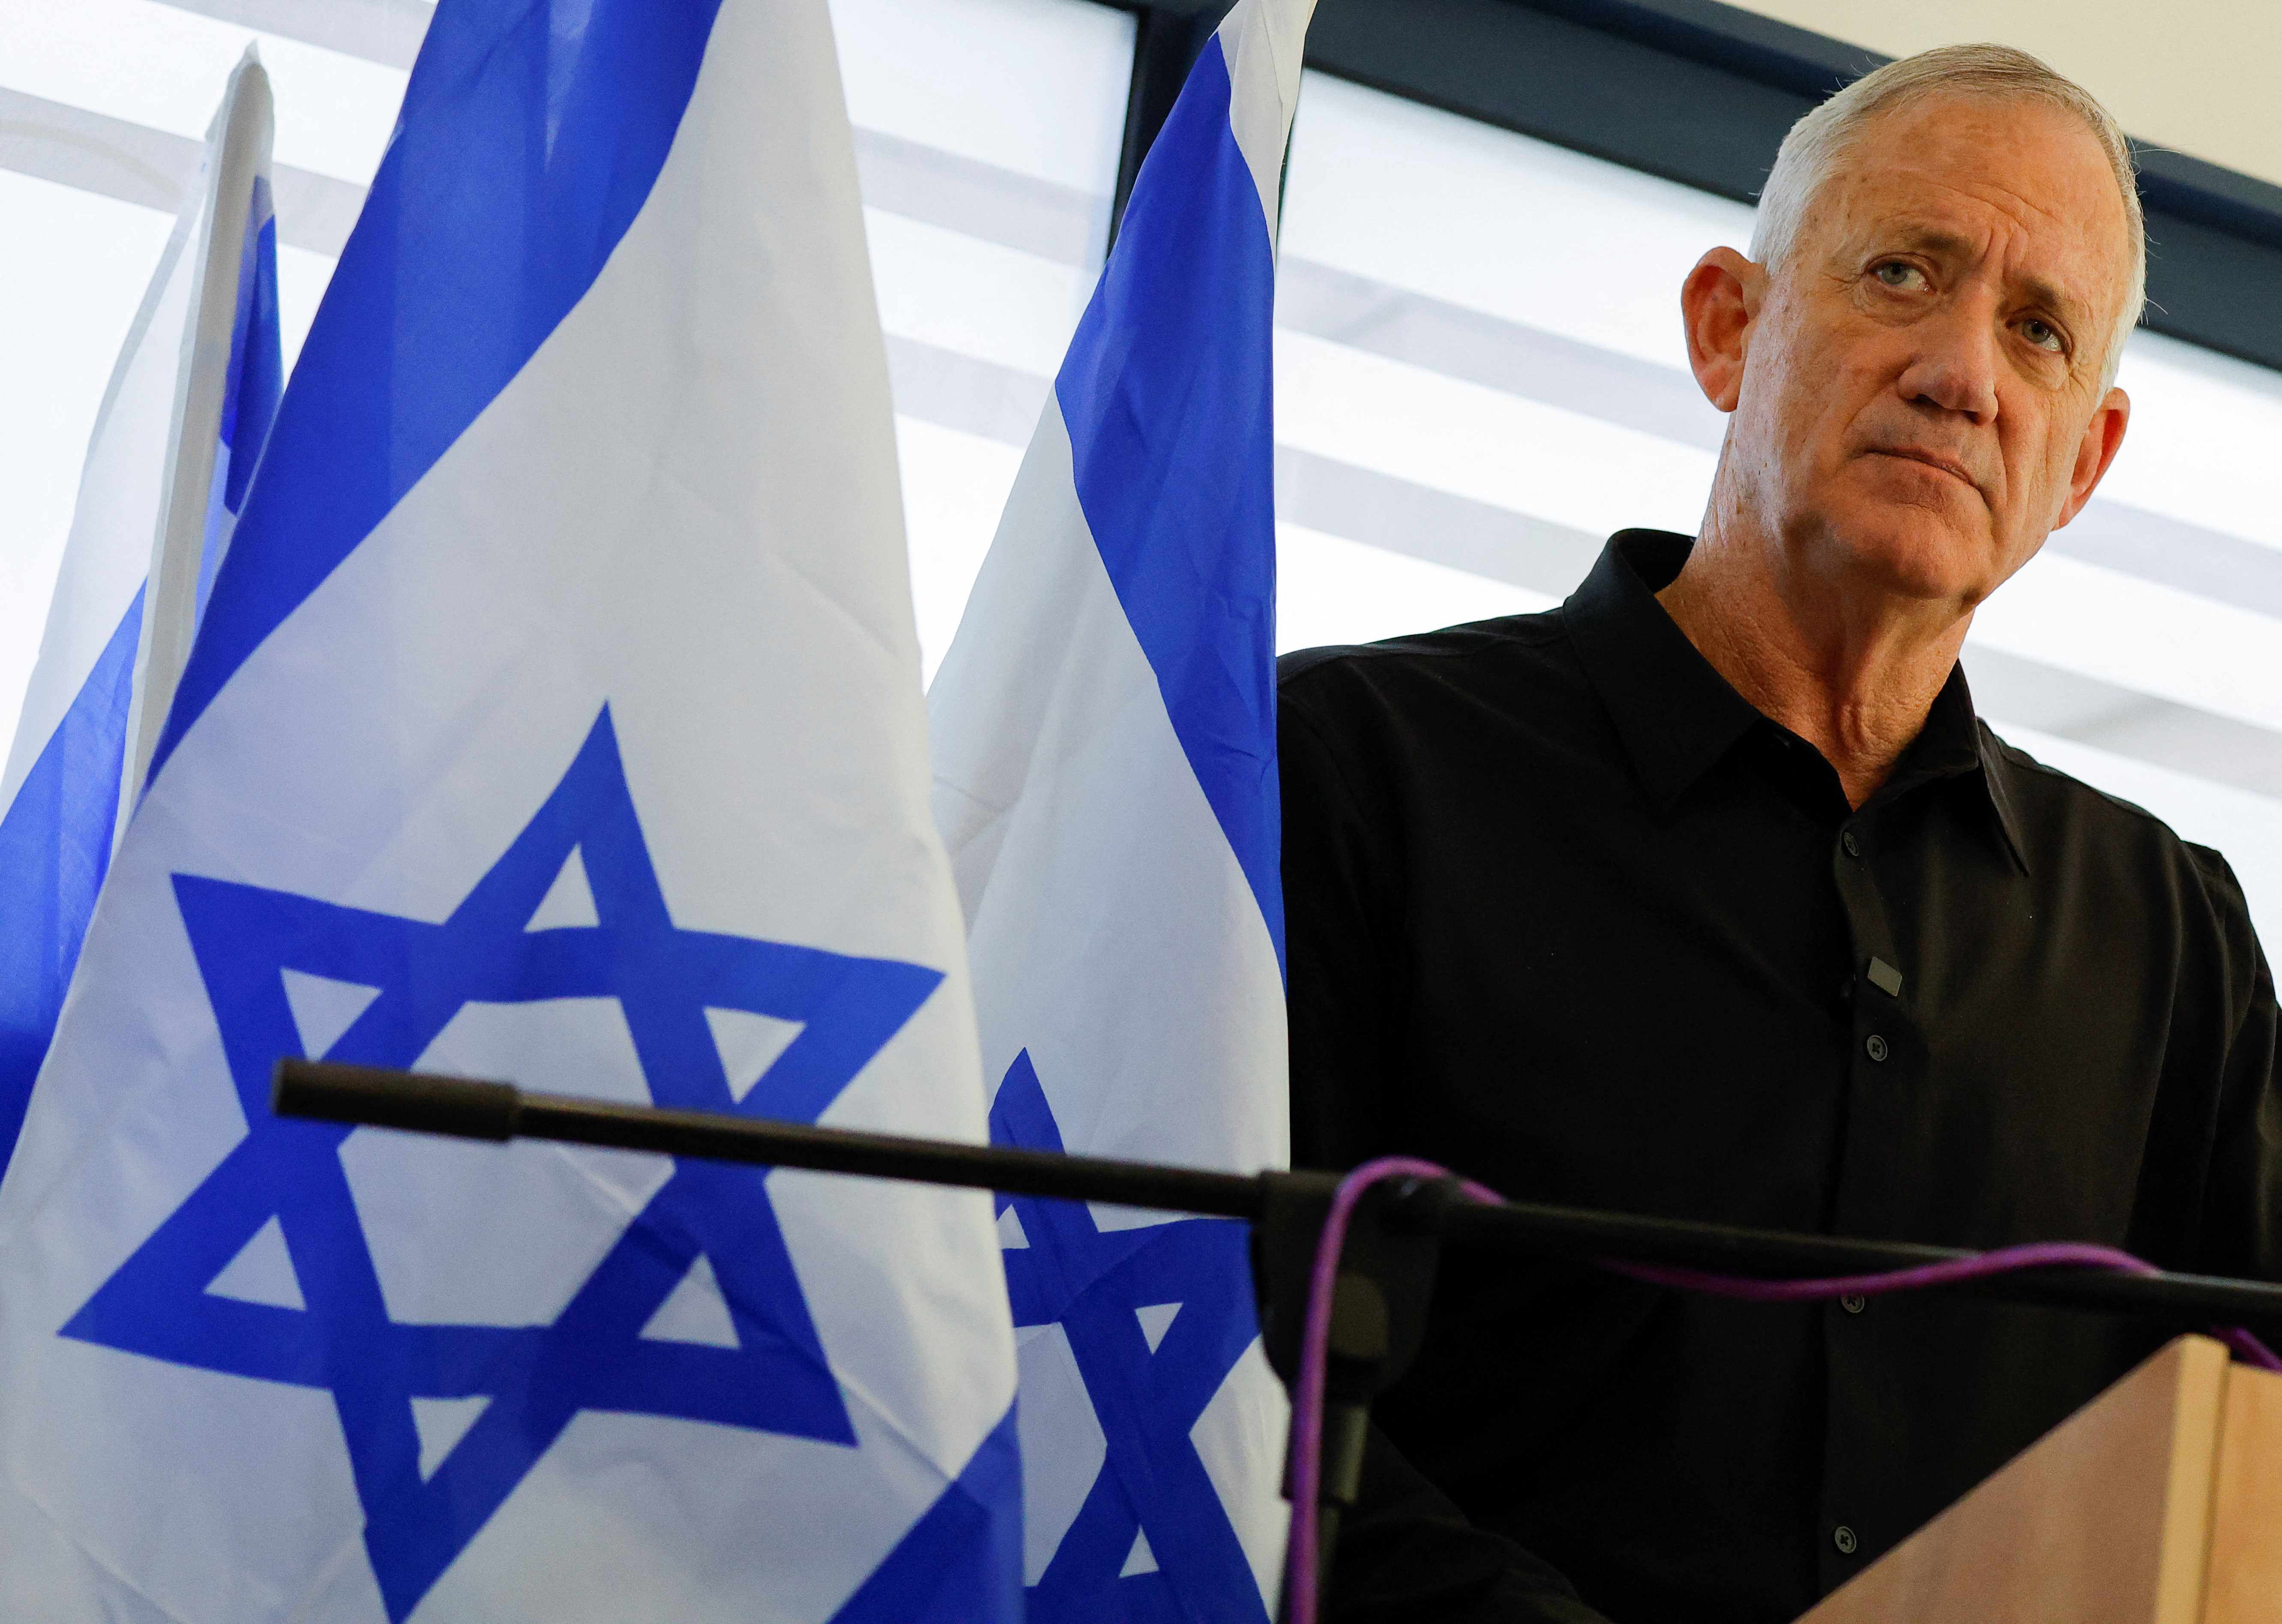 Defence Minister of Israel Benny Gantz speaks during a press conference in Shlomi